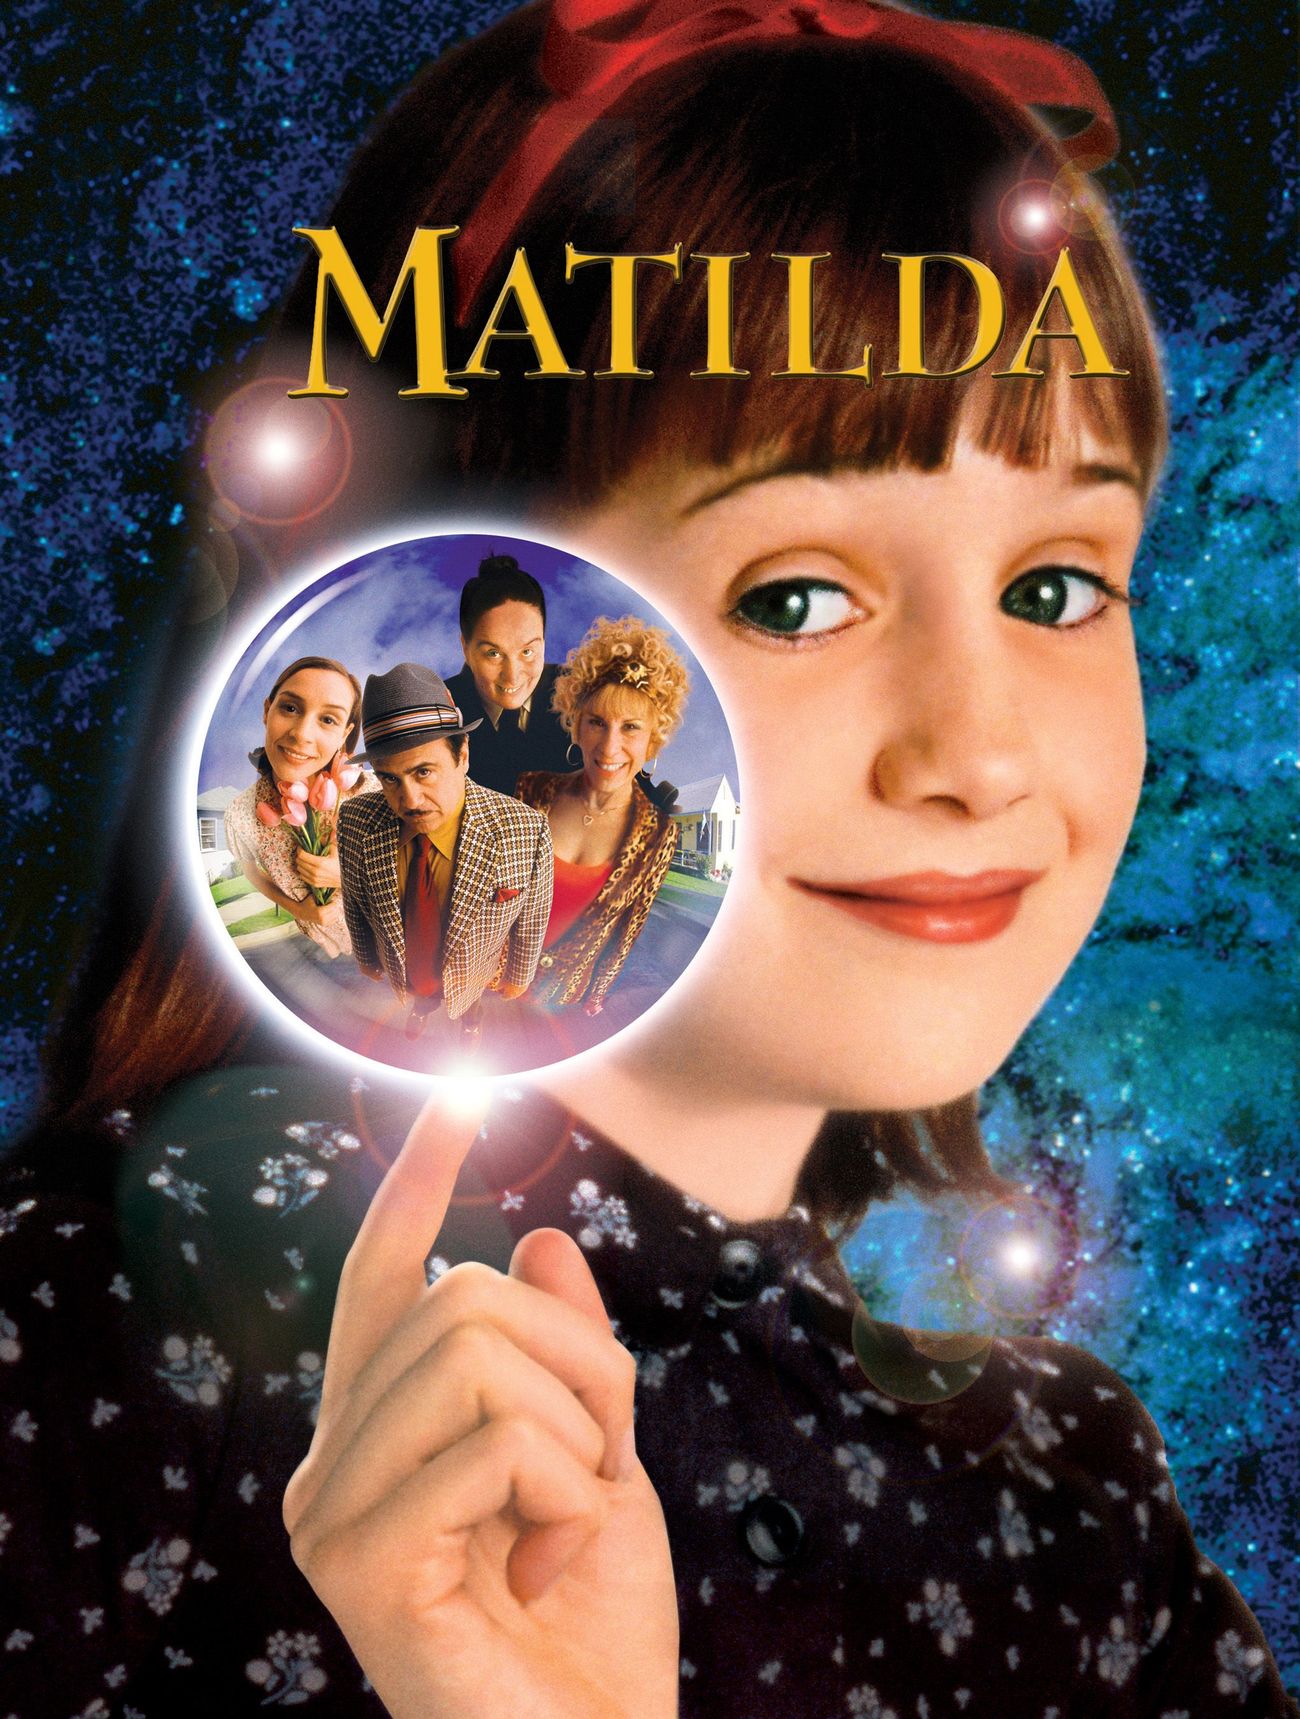 The classic movie Matilda